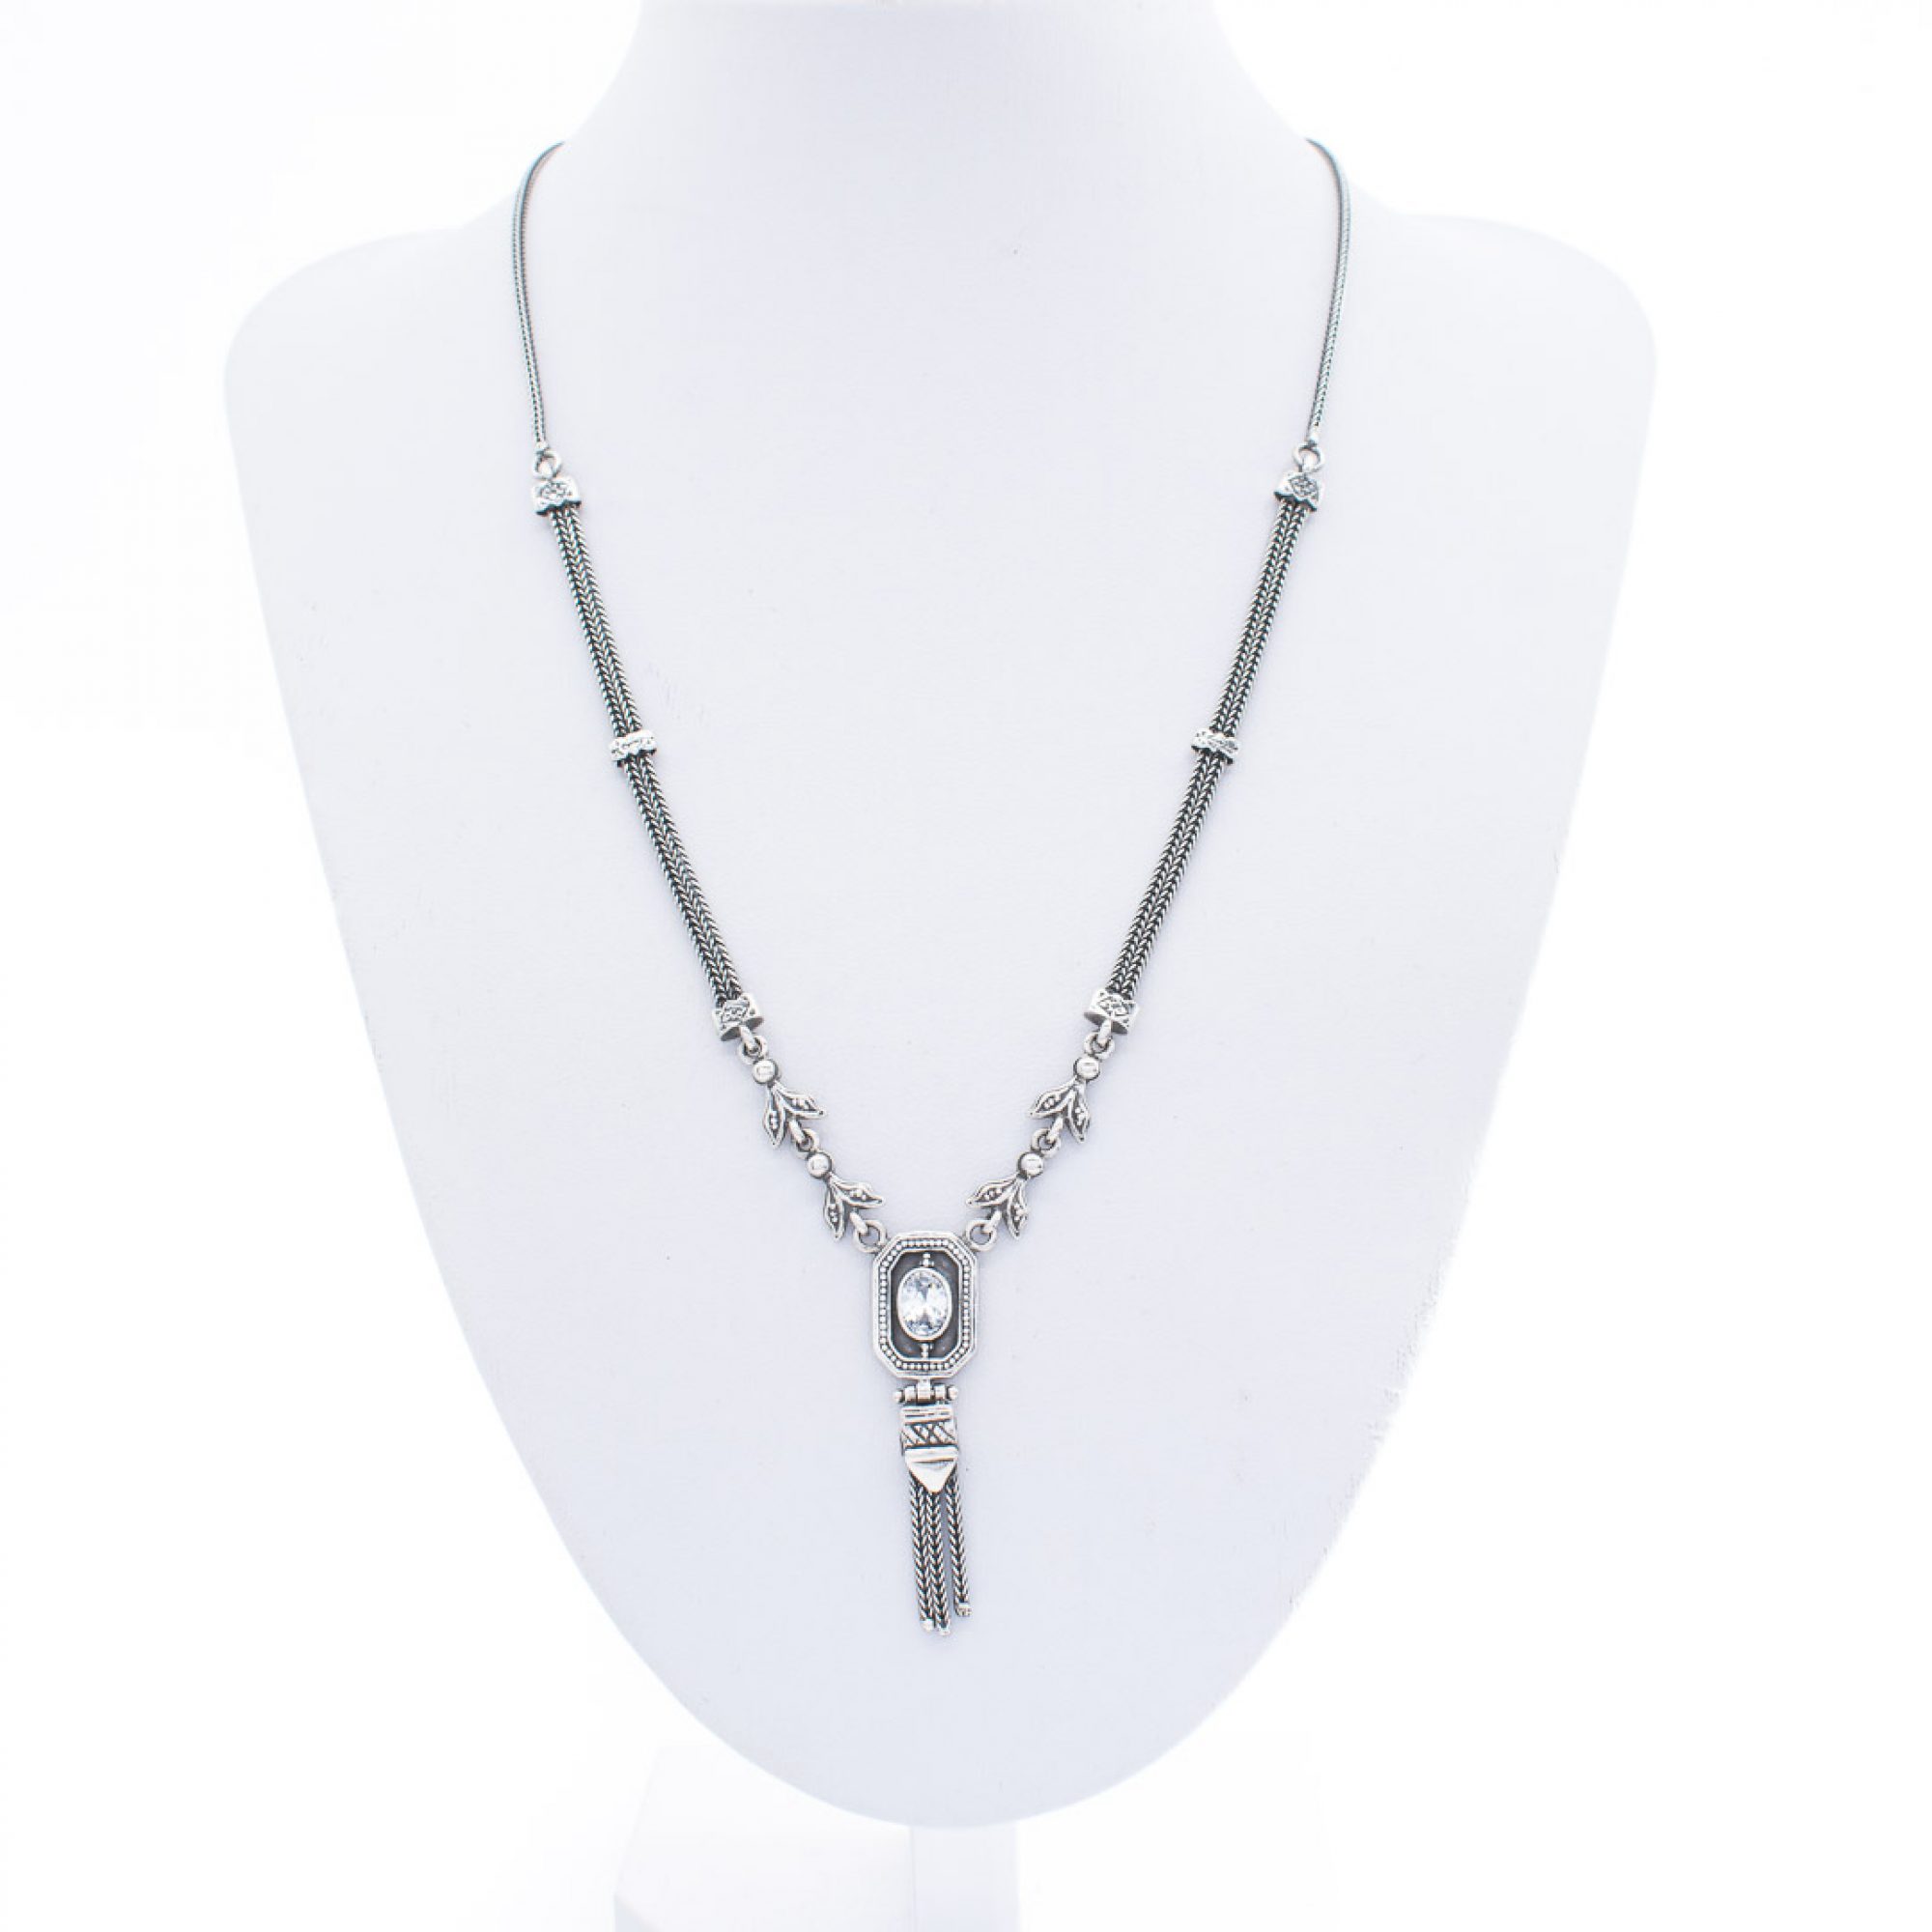 Oxidised necklace with zircon stone